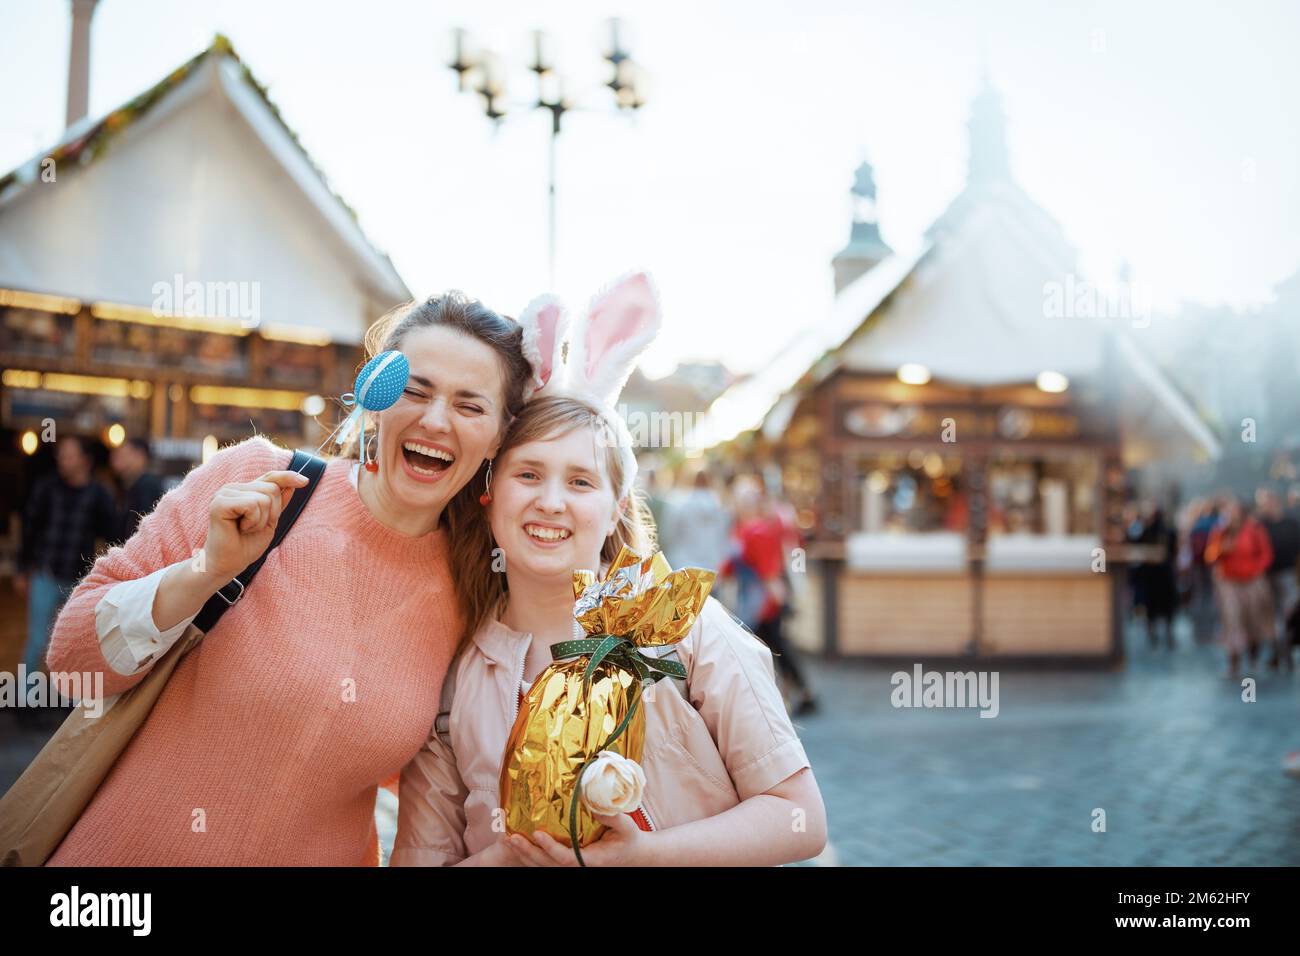 Osterspaß. Lächelnde junge Mutter und Kind mit goldenem osterei auf dem Jahrmarkt in der Stadt. Stockfoto